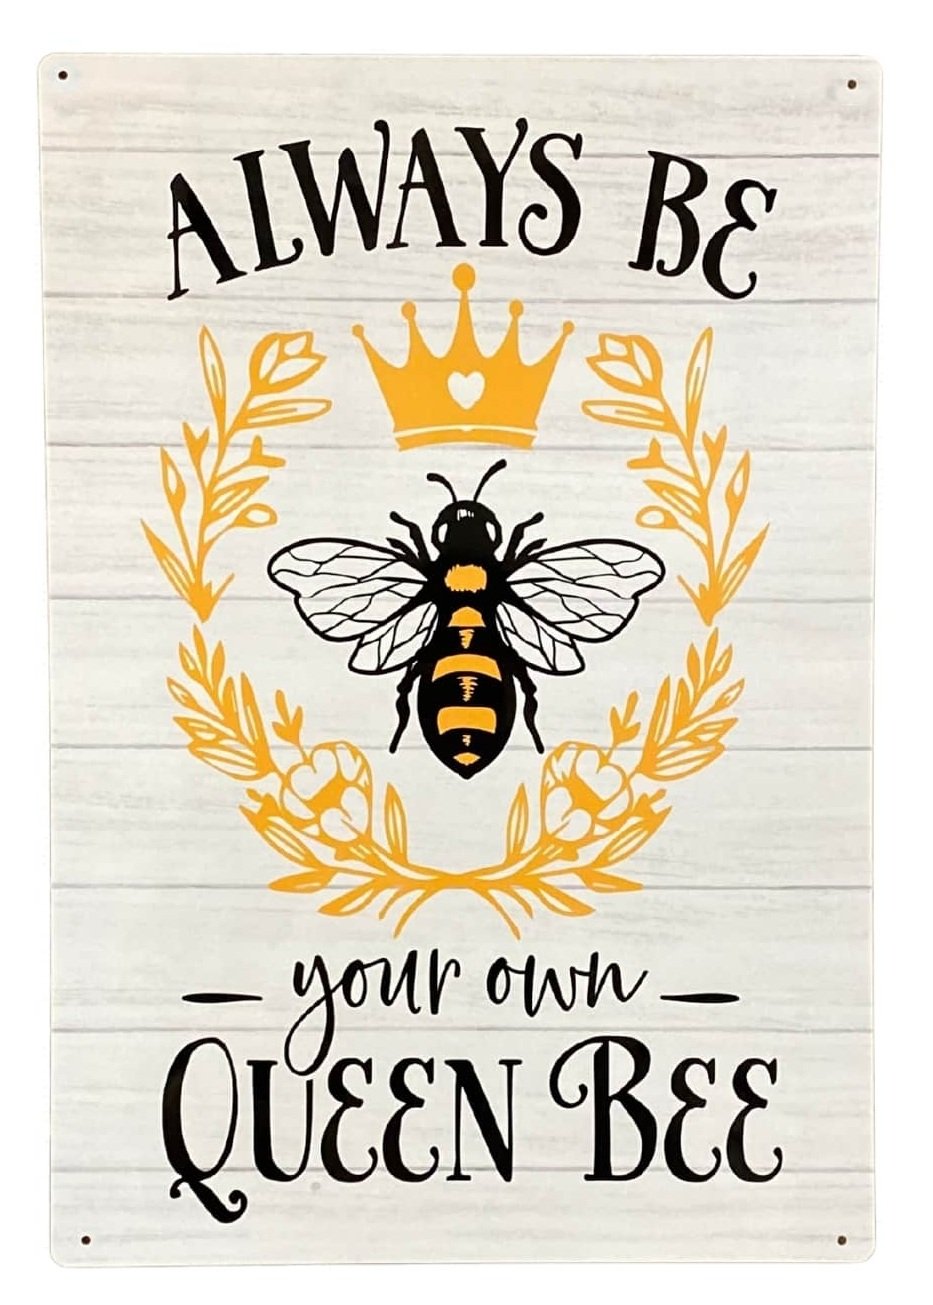 Metal Sign Plaque - Always Be Your Own Queen Bee